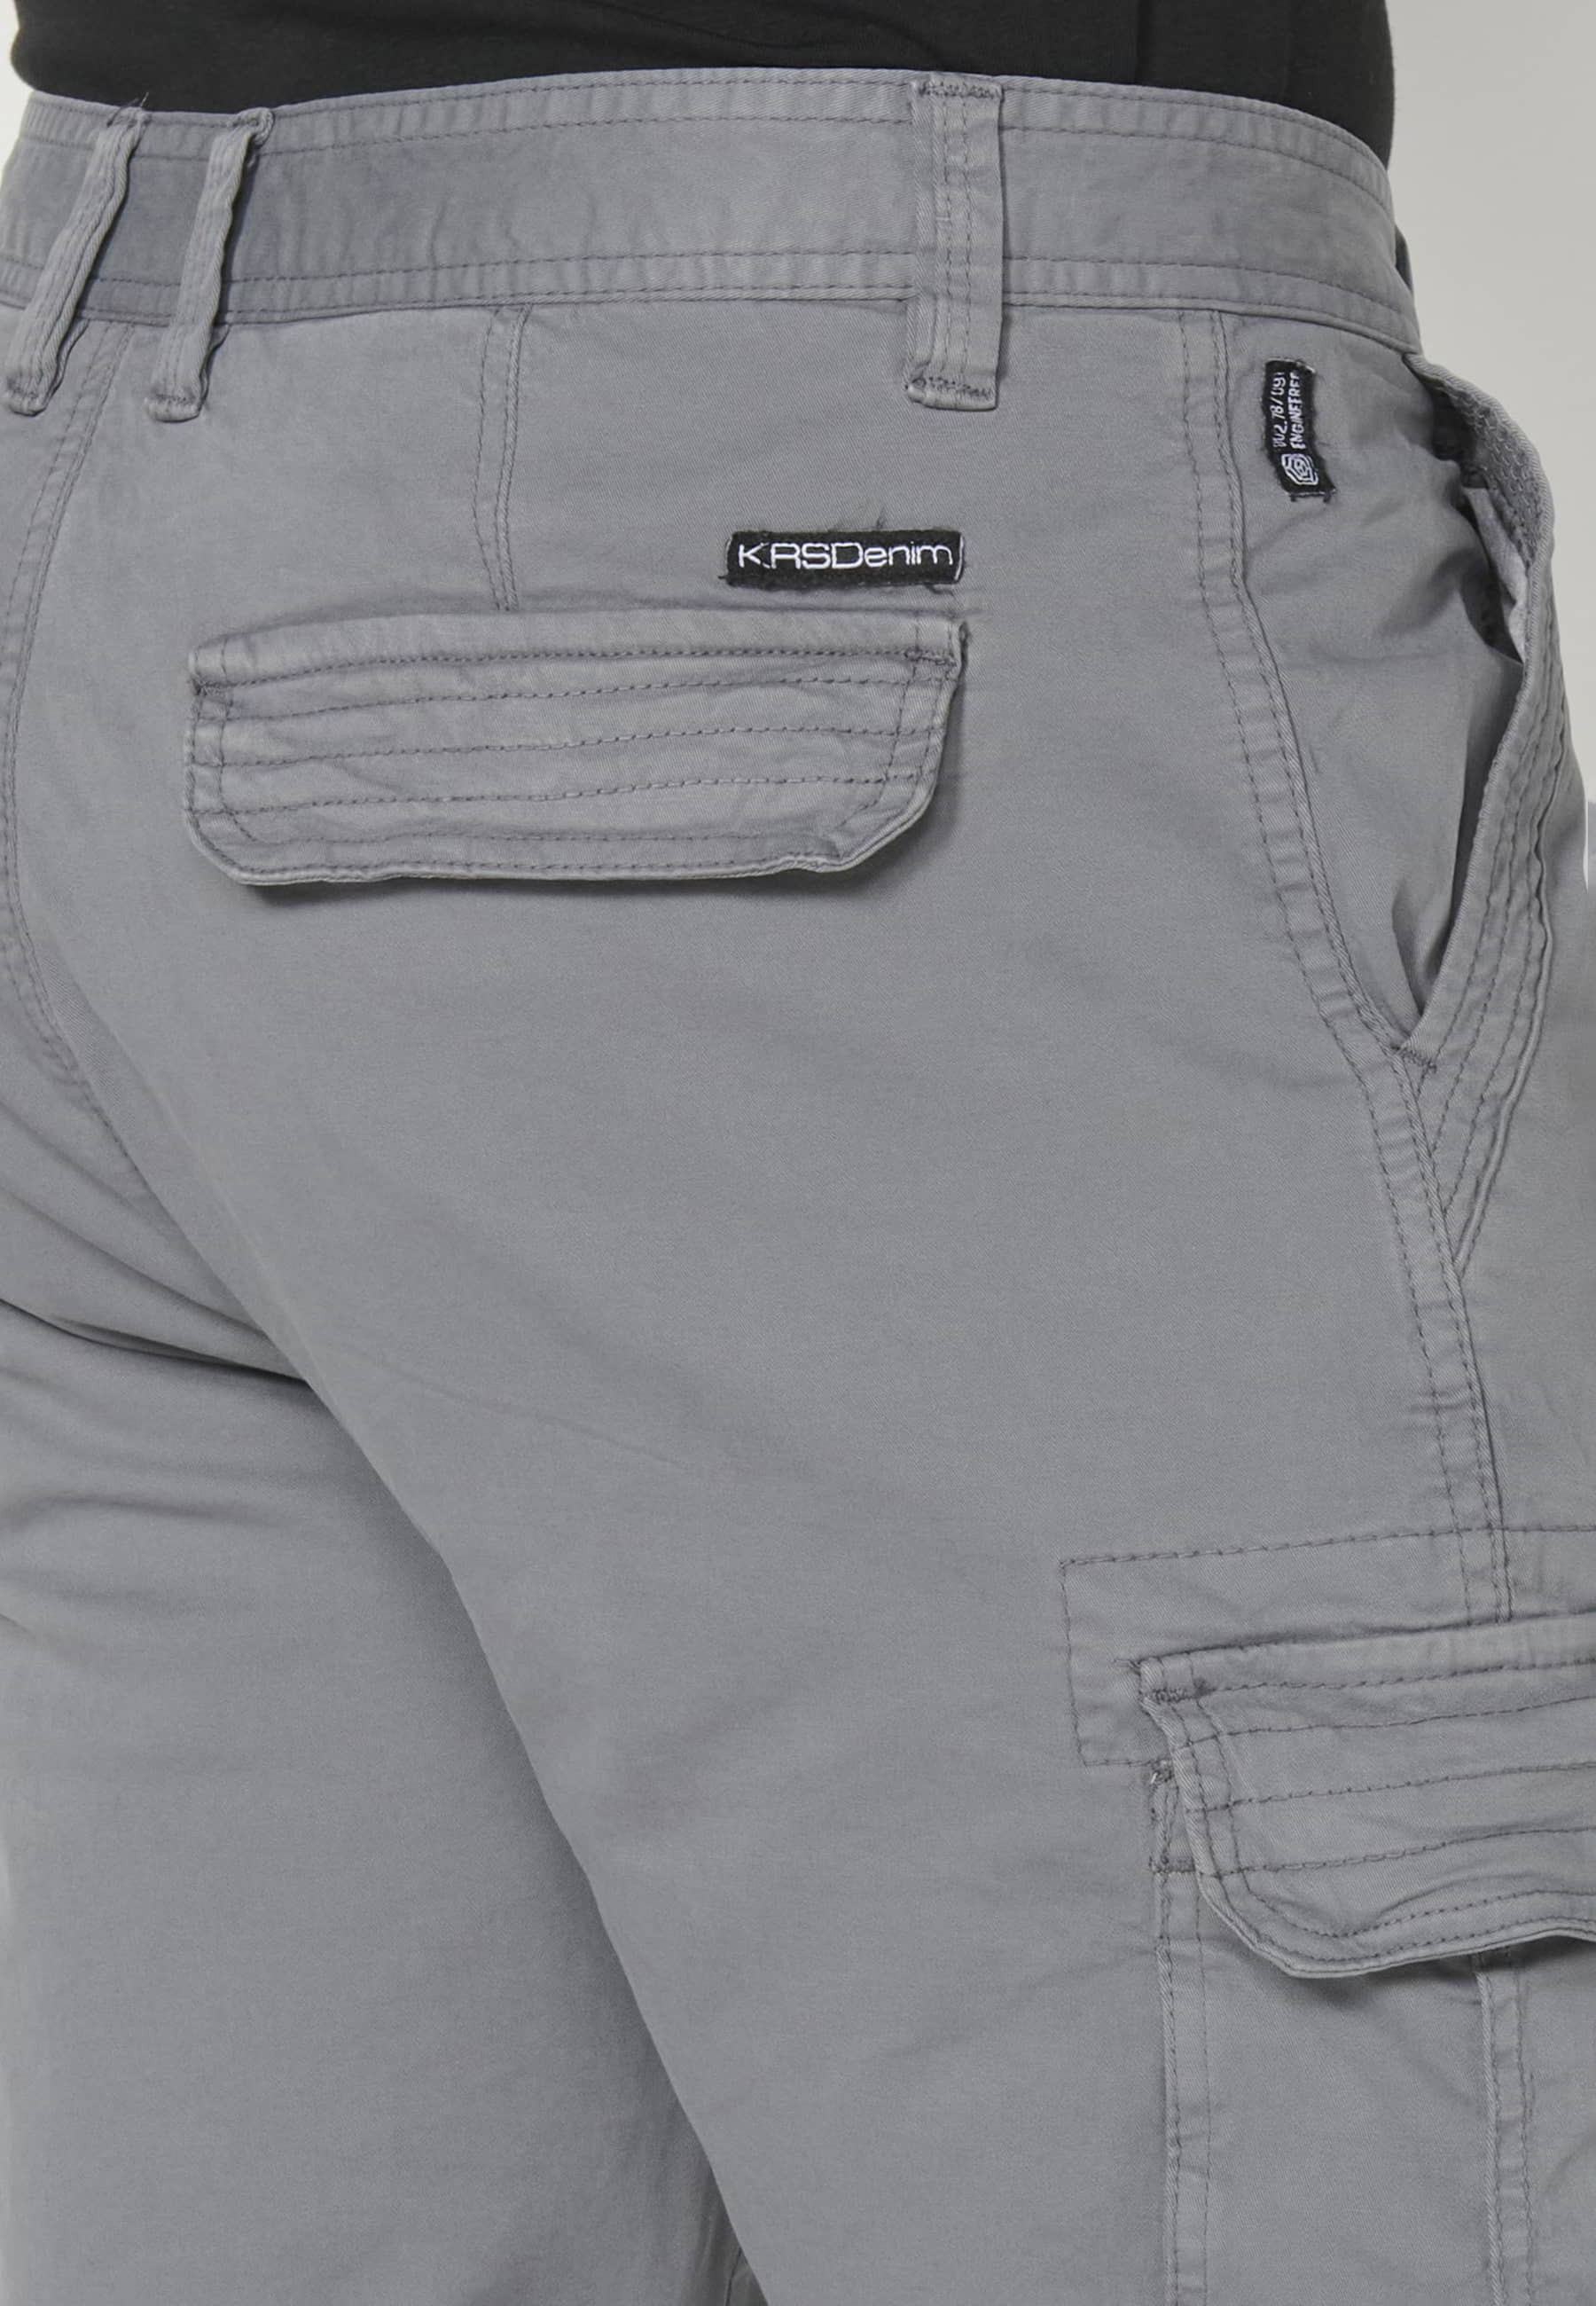 Bermuda-Shorts im Cargo-Stil in grauer Farbe für Herren